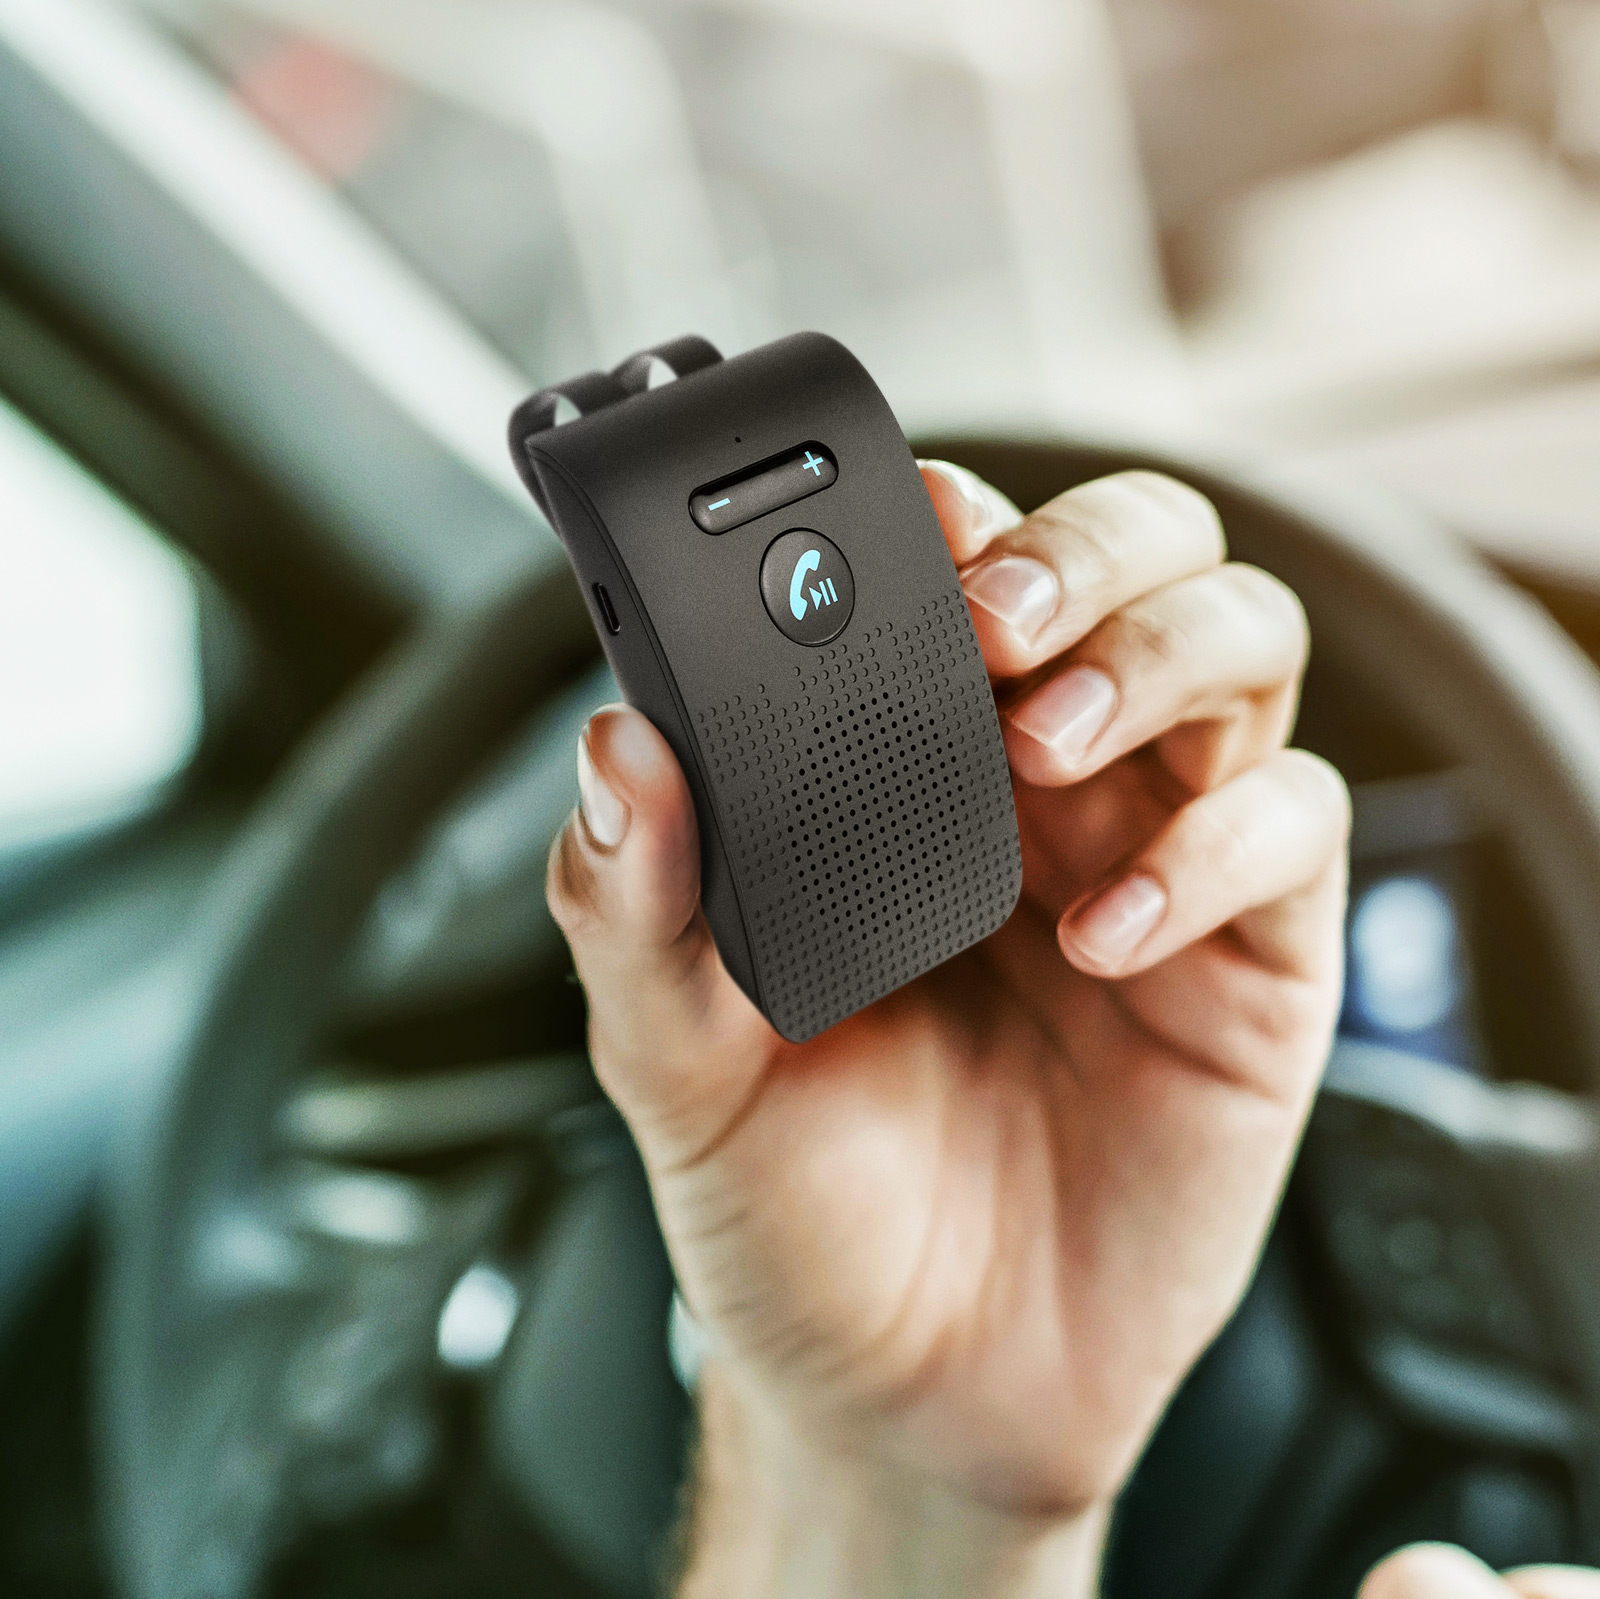 Kit main libre voiture Bluetooth multi-points (100% Legal Loi Juillet 2015)  - KX1 - Noir - Français